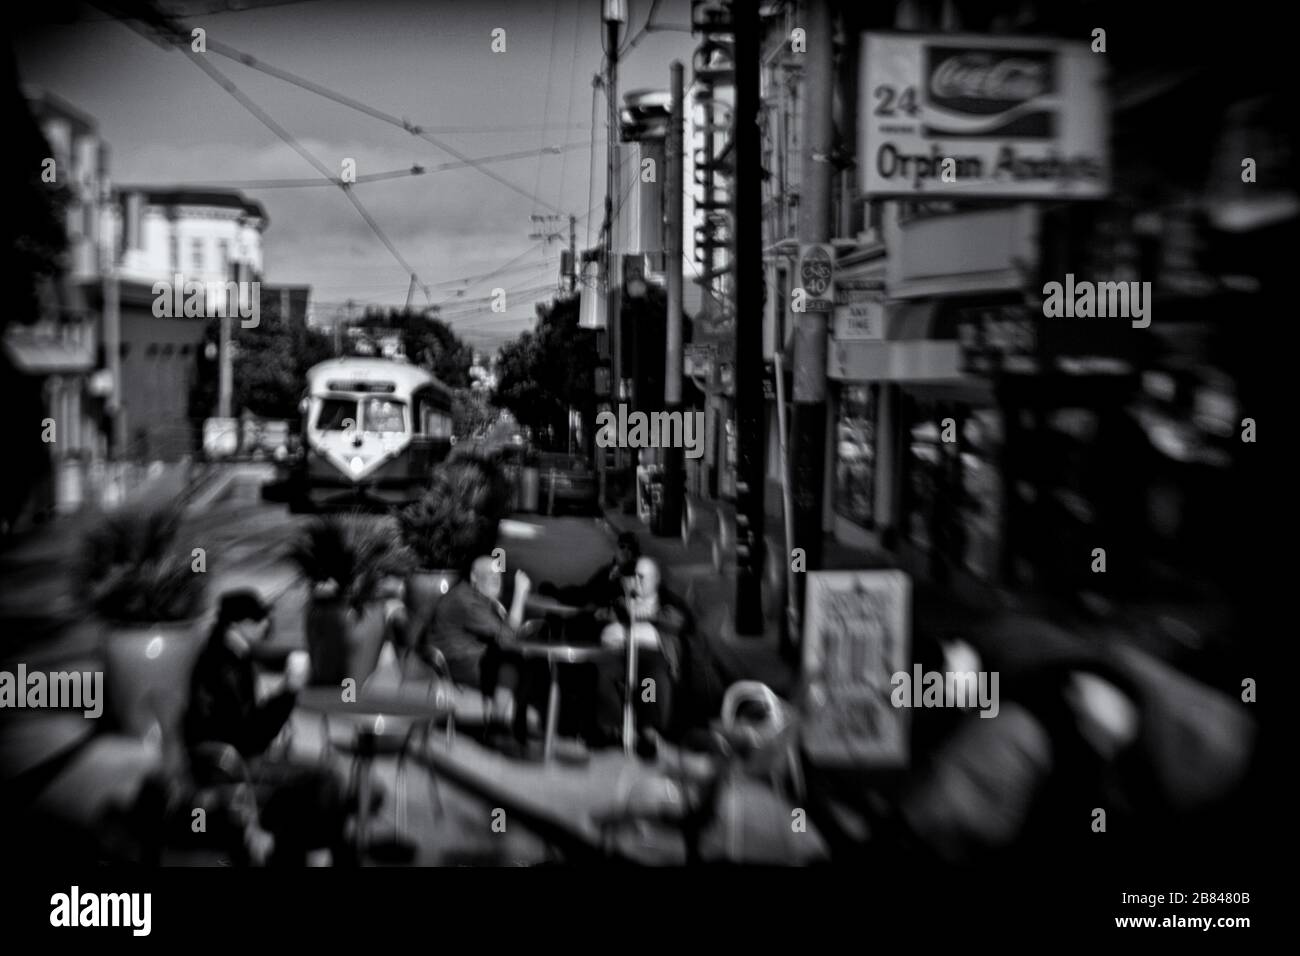 Les années 1950 ? Un après-midi de style rétro dans le quartier de Castro dans un café extérieur et un tramway vintage, San Francisco, Californie, États-Unis, noir et blanc Banque D'Images